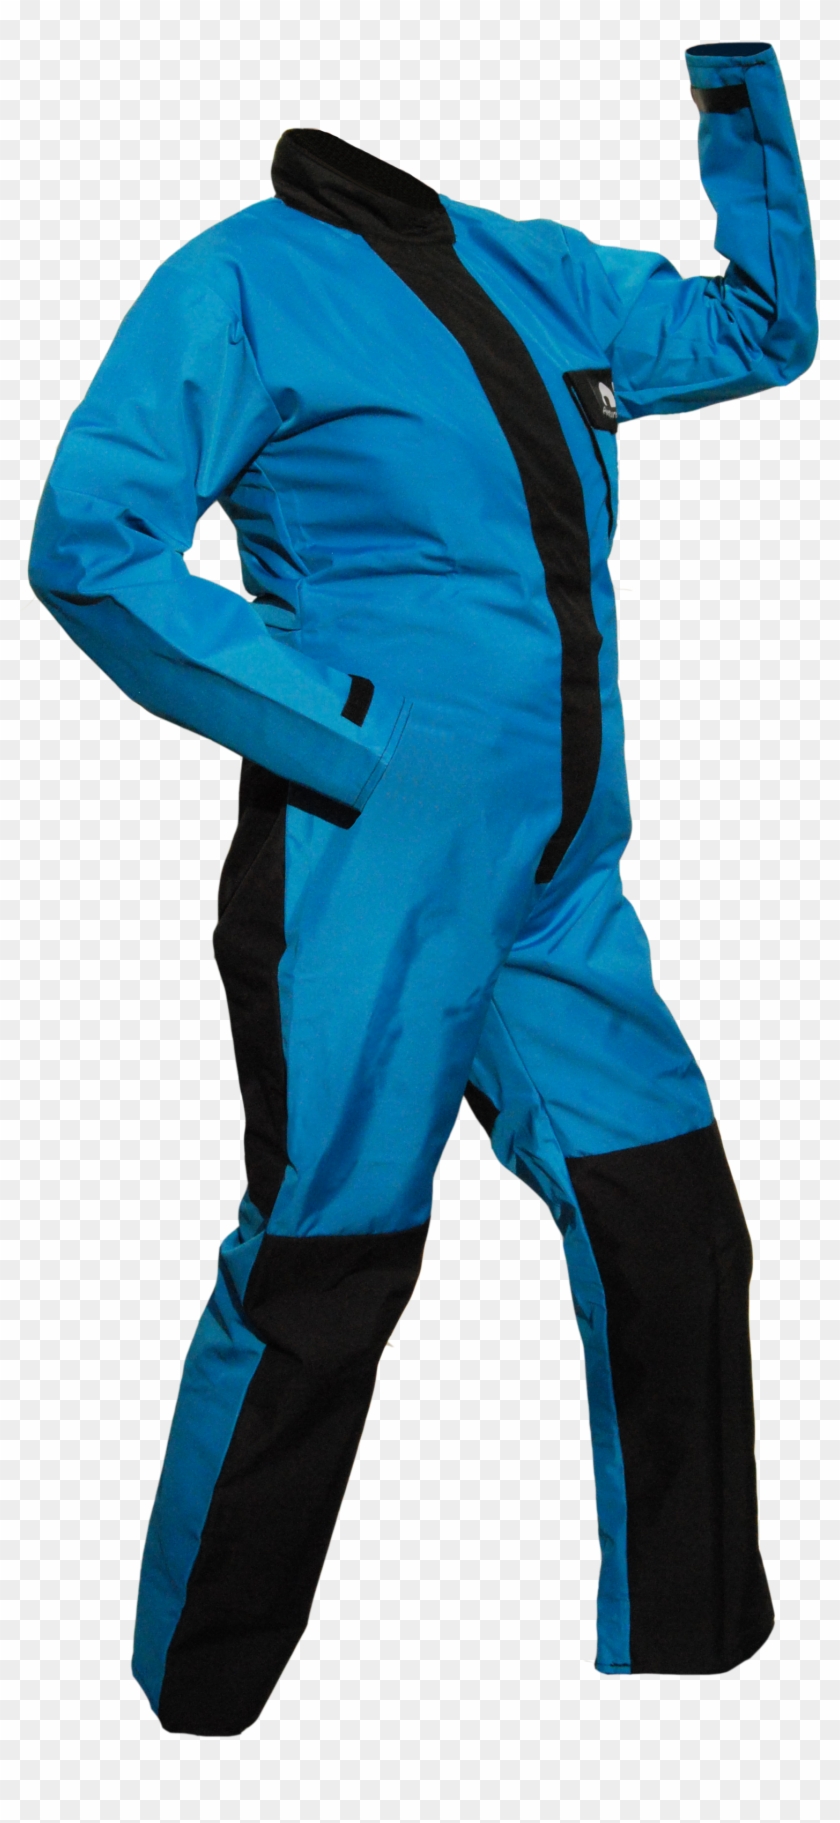 Blue Ladies Suit Hölloch Comfort Lady - Combinaison De Spéléologie Clipart #249915